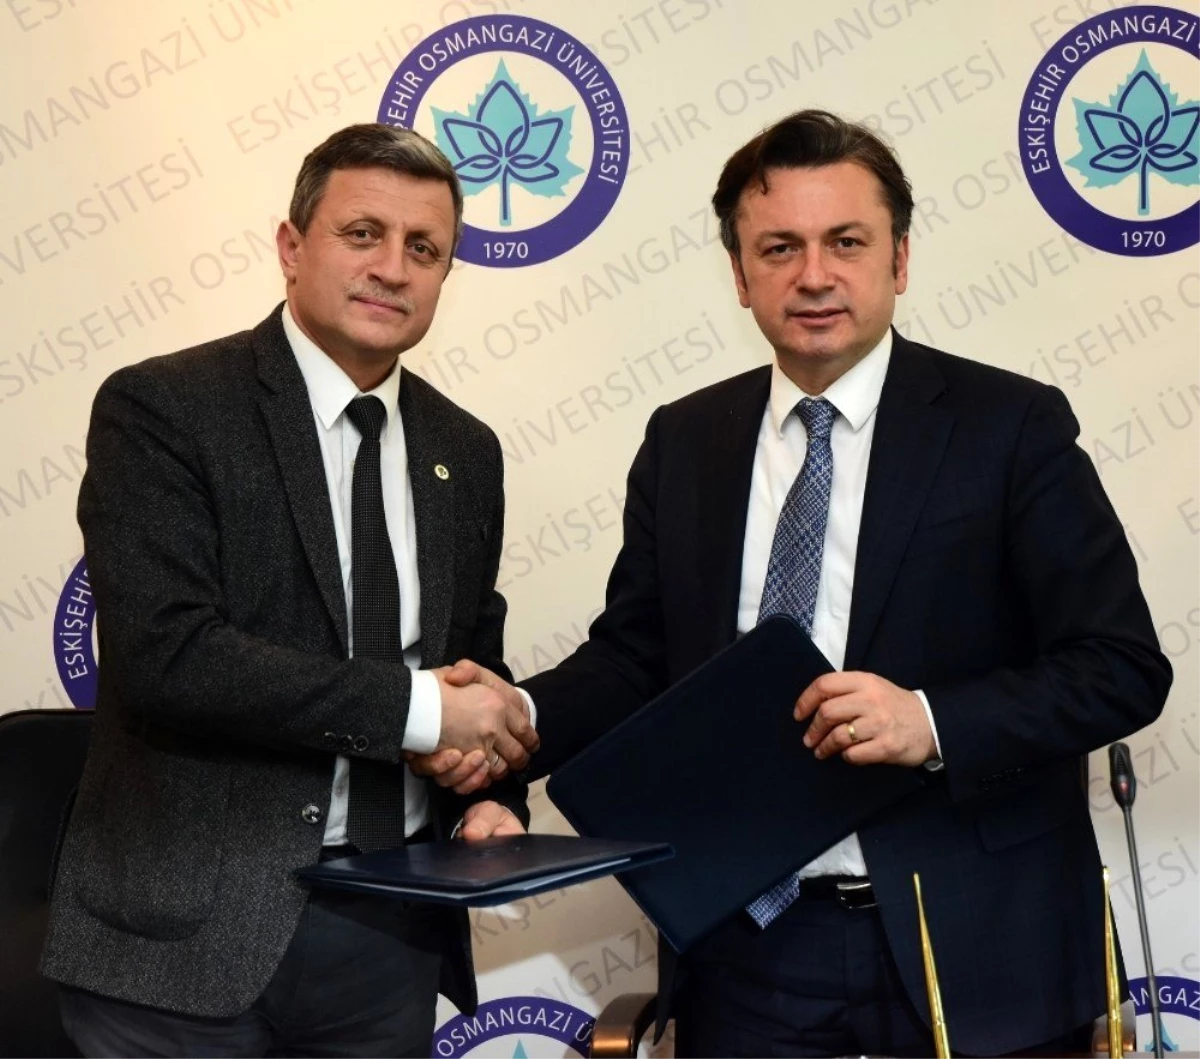 ESOGÜ ile Eskişehir Orman Bölge Müdürlüğü arasında işbirliği protokolü imzalandı